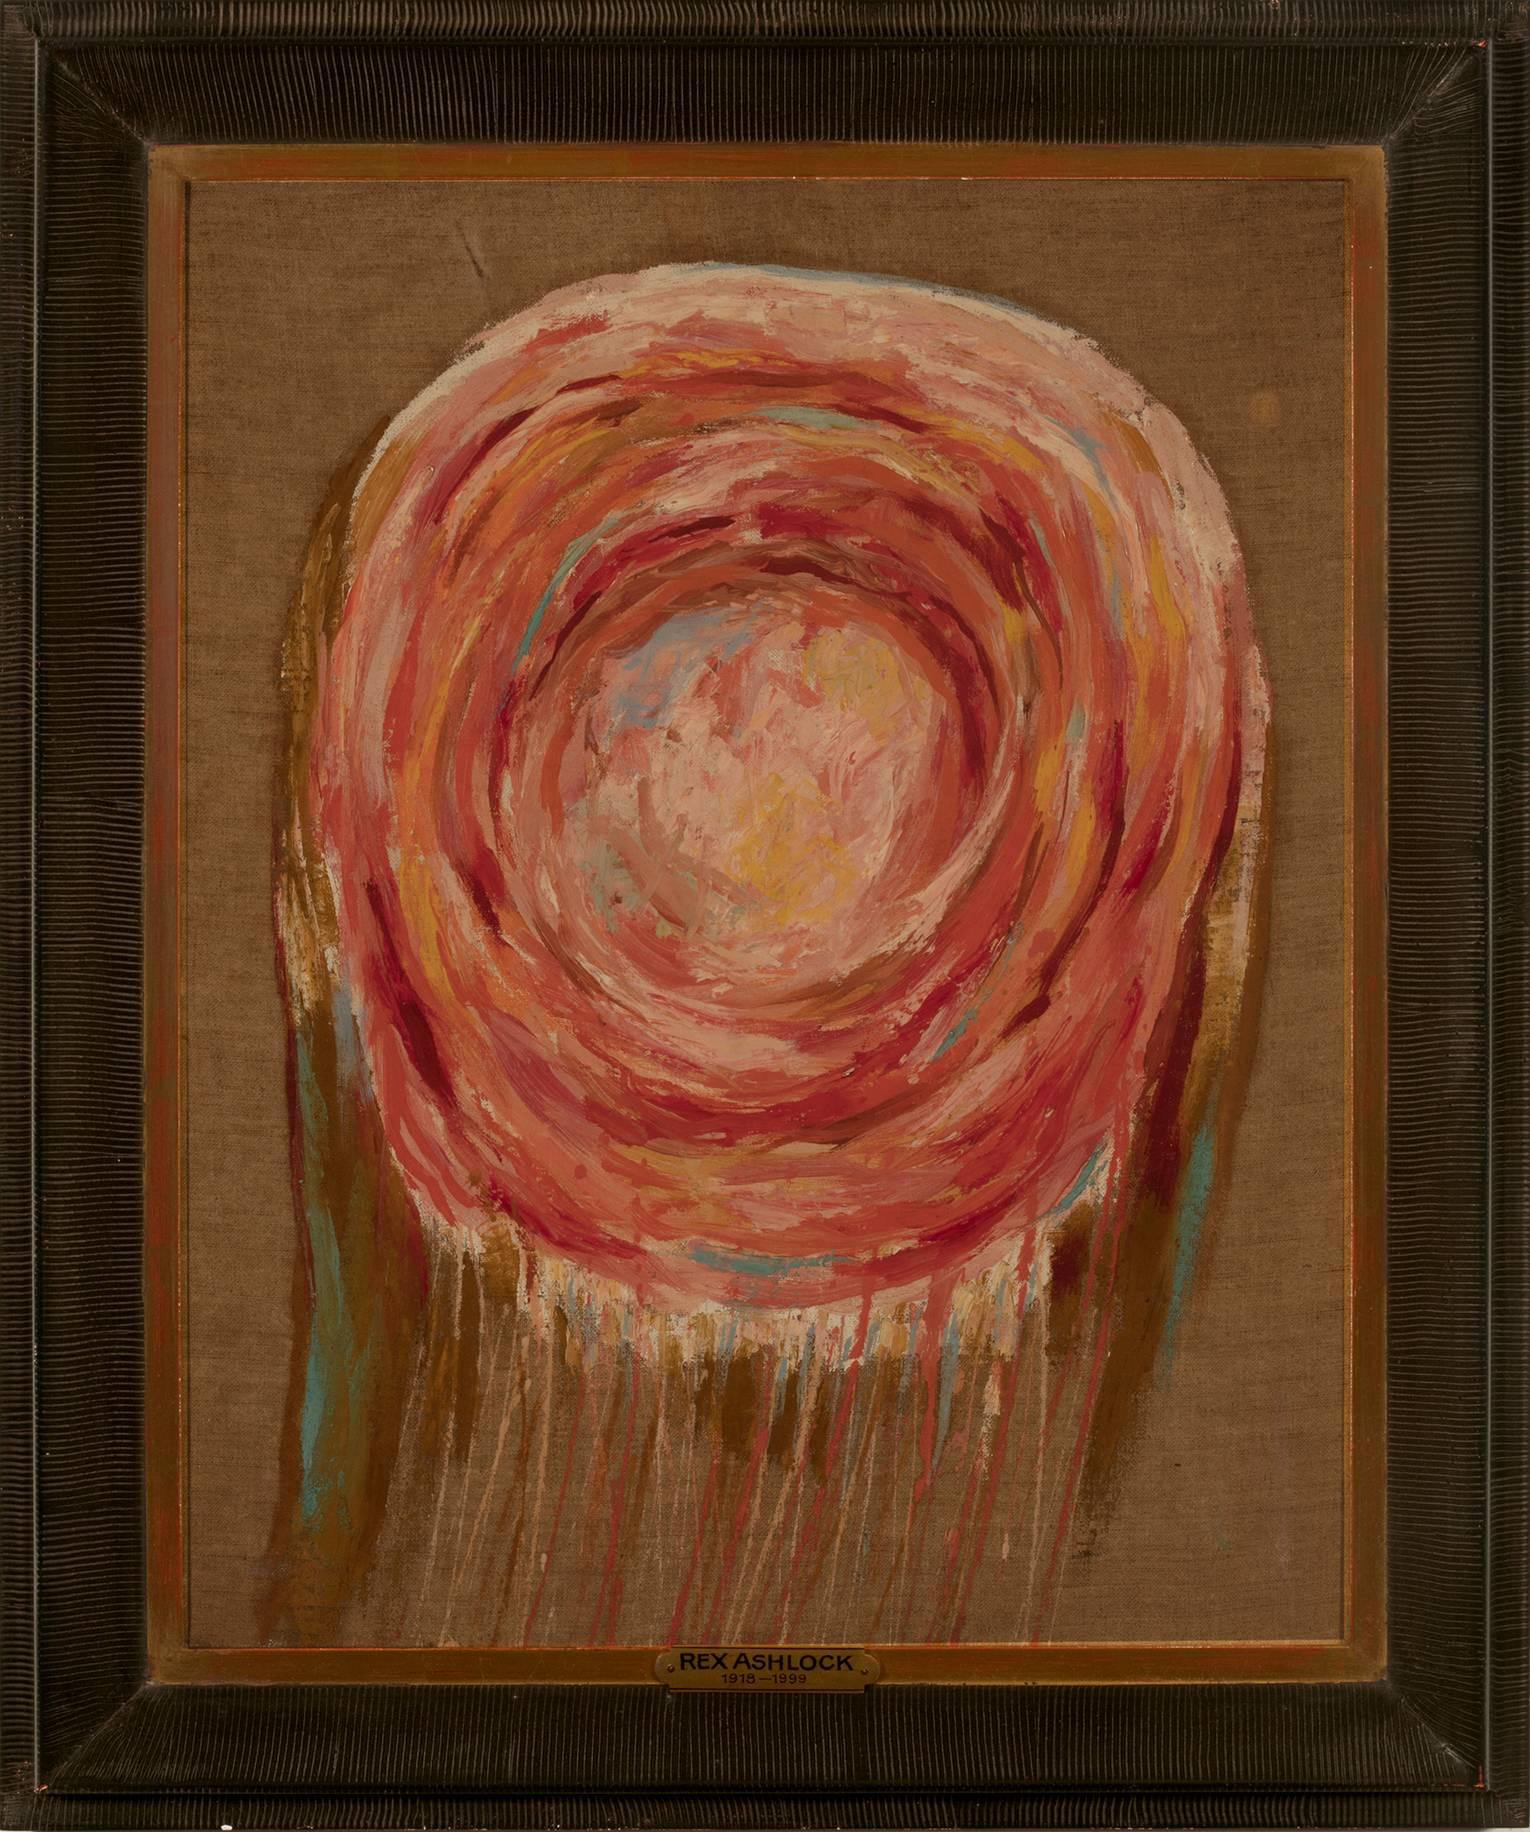 Rex Ashlock Abstract Painting - "Pink"